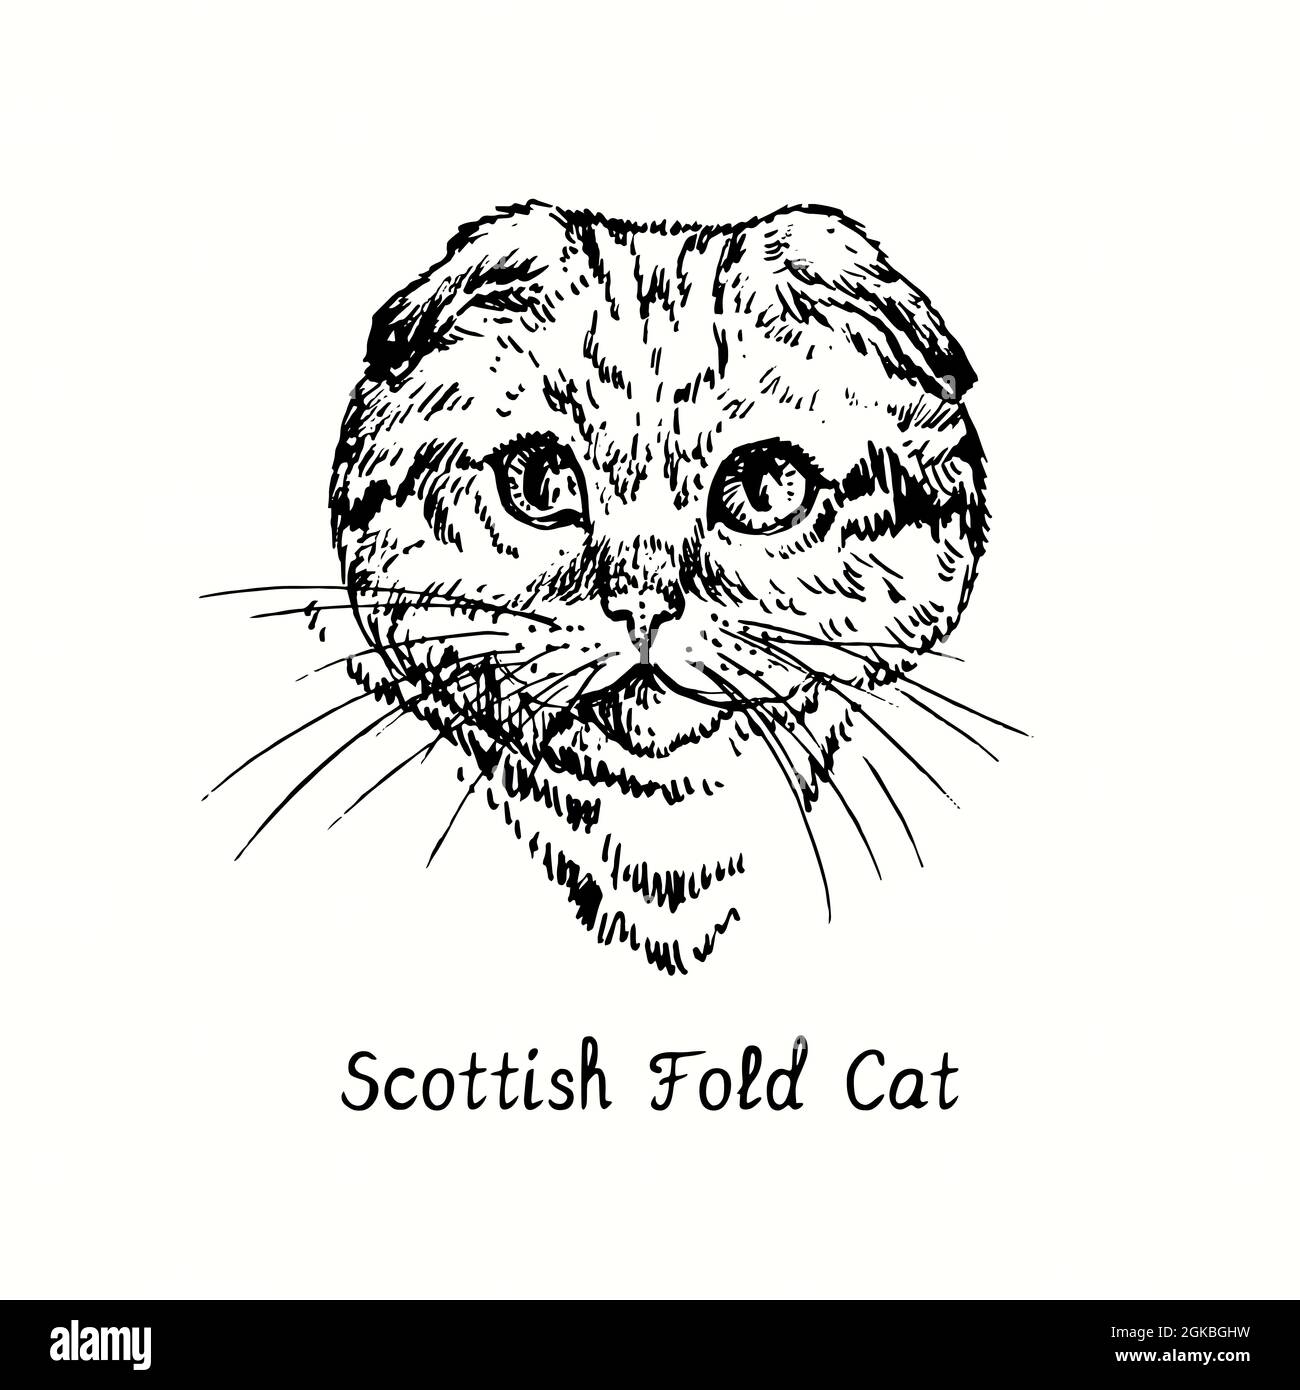 Scotish Fold Cat Face Portrait. Tusche schwarz-weiße Doodle Zeichnung im Holzschnitt-Stil. Stockfoto